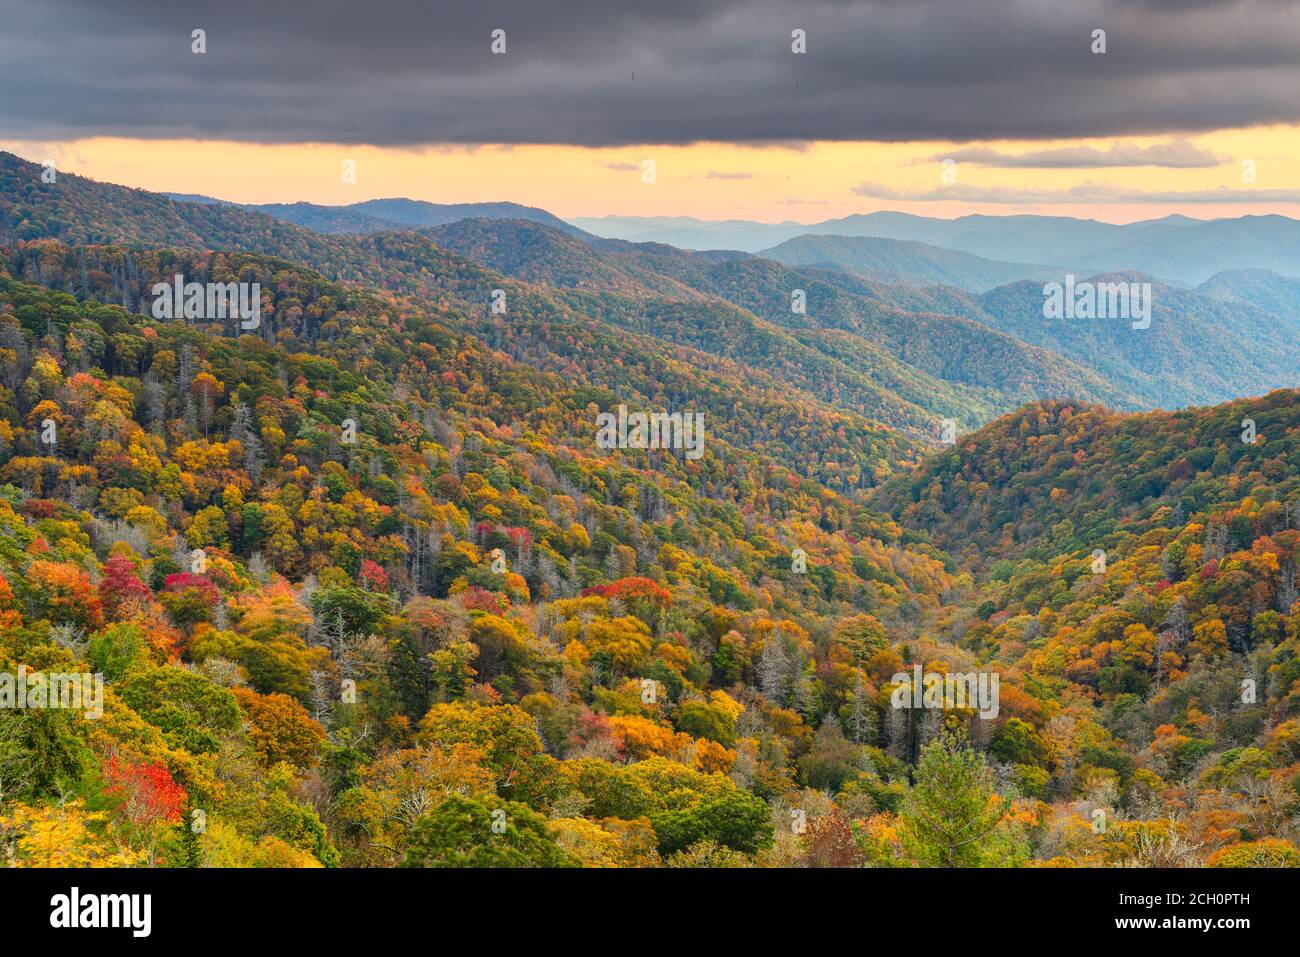 Great Smoky Mountains National Park, Tennessee, EE.UU. domina la recién pasada en otoño. Foto de stock